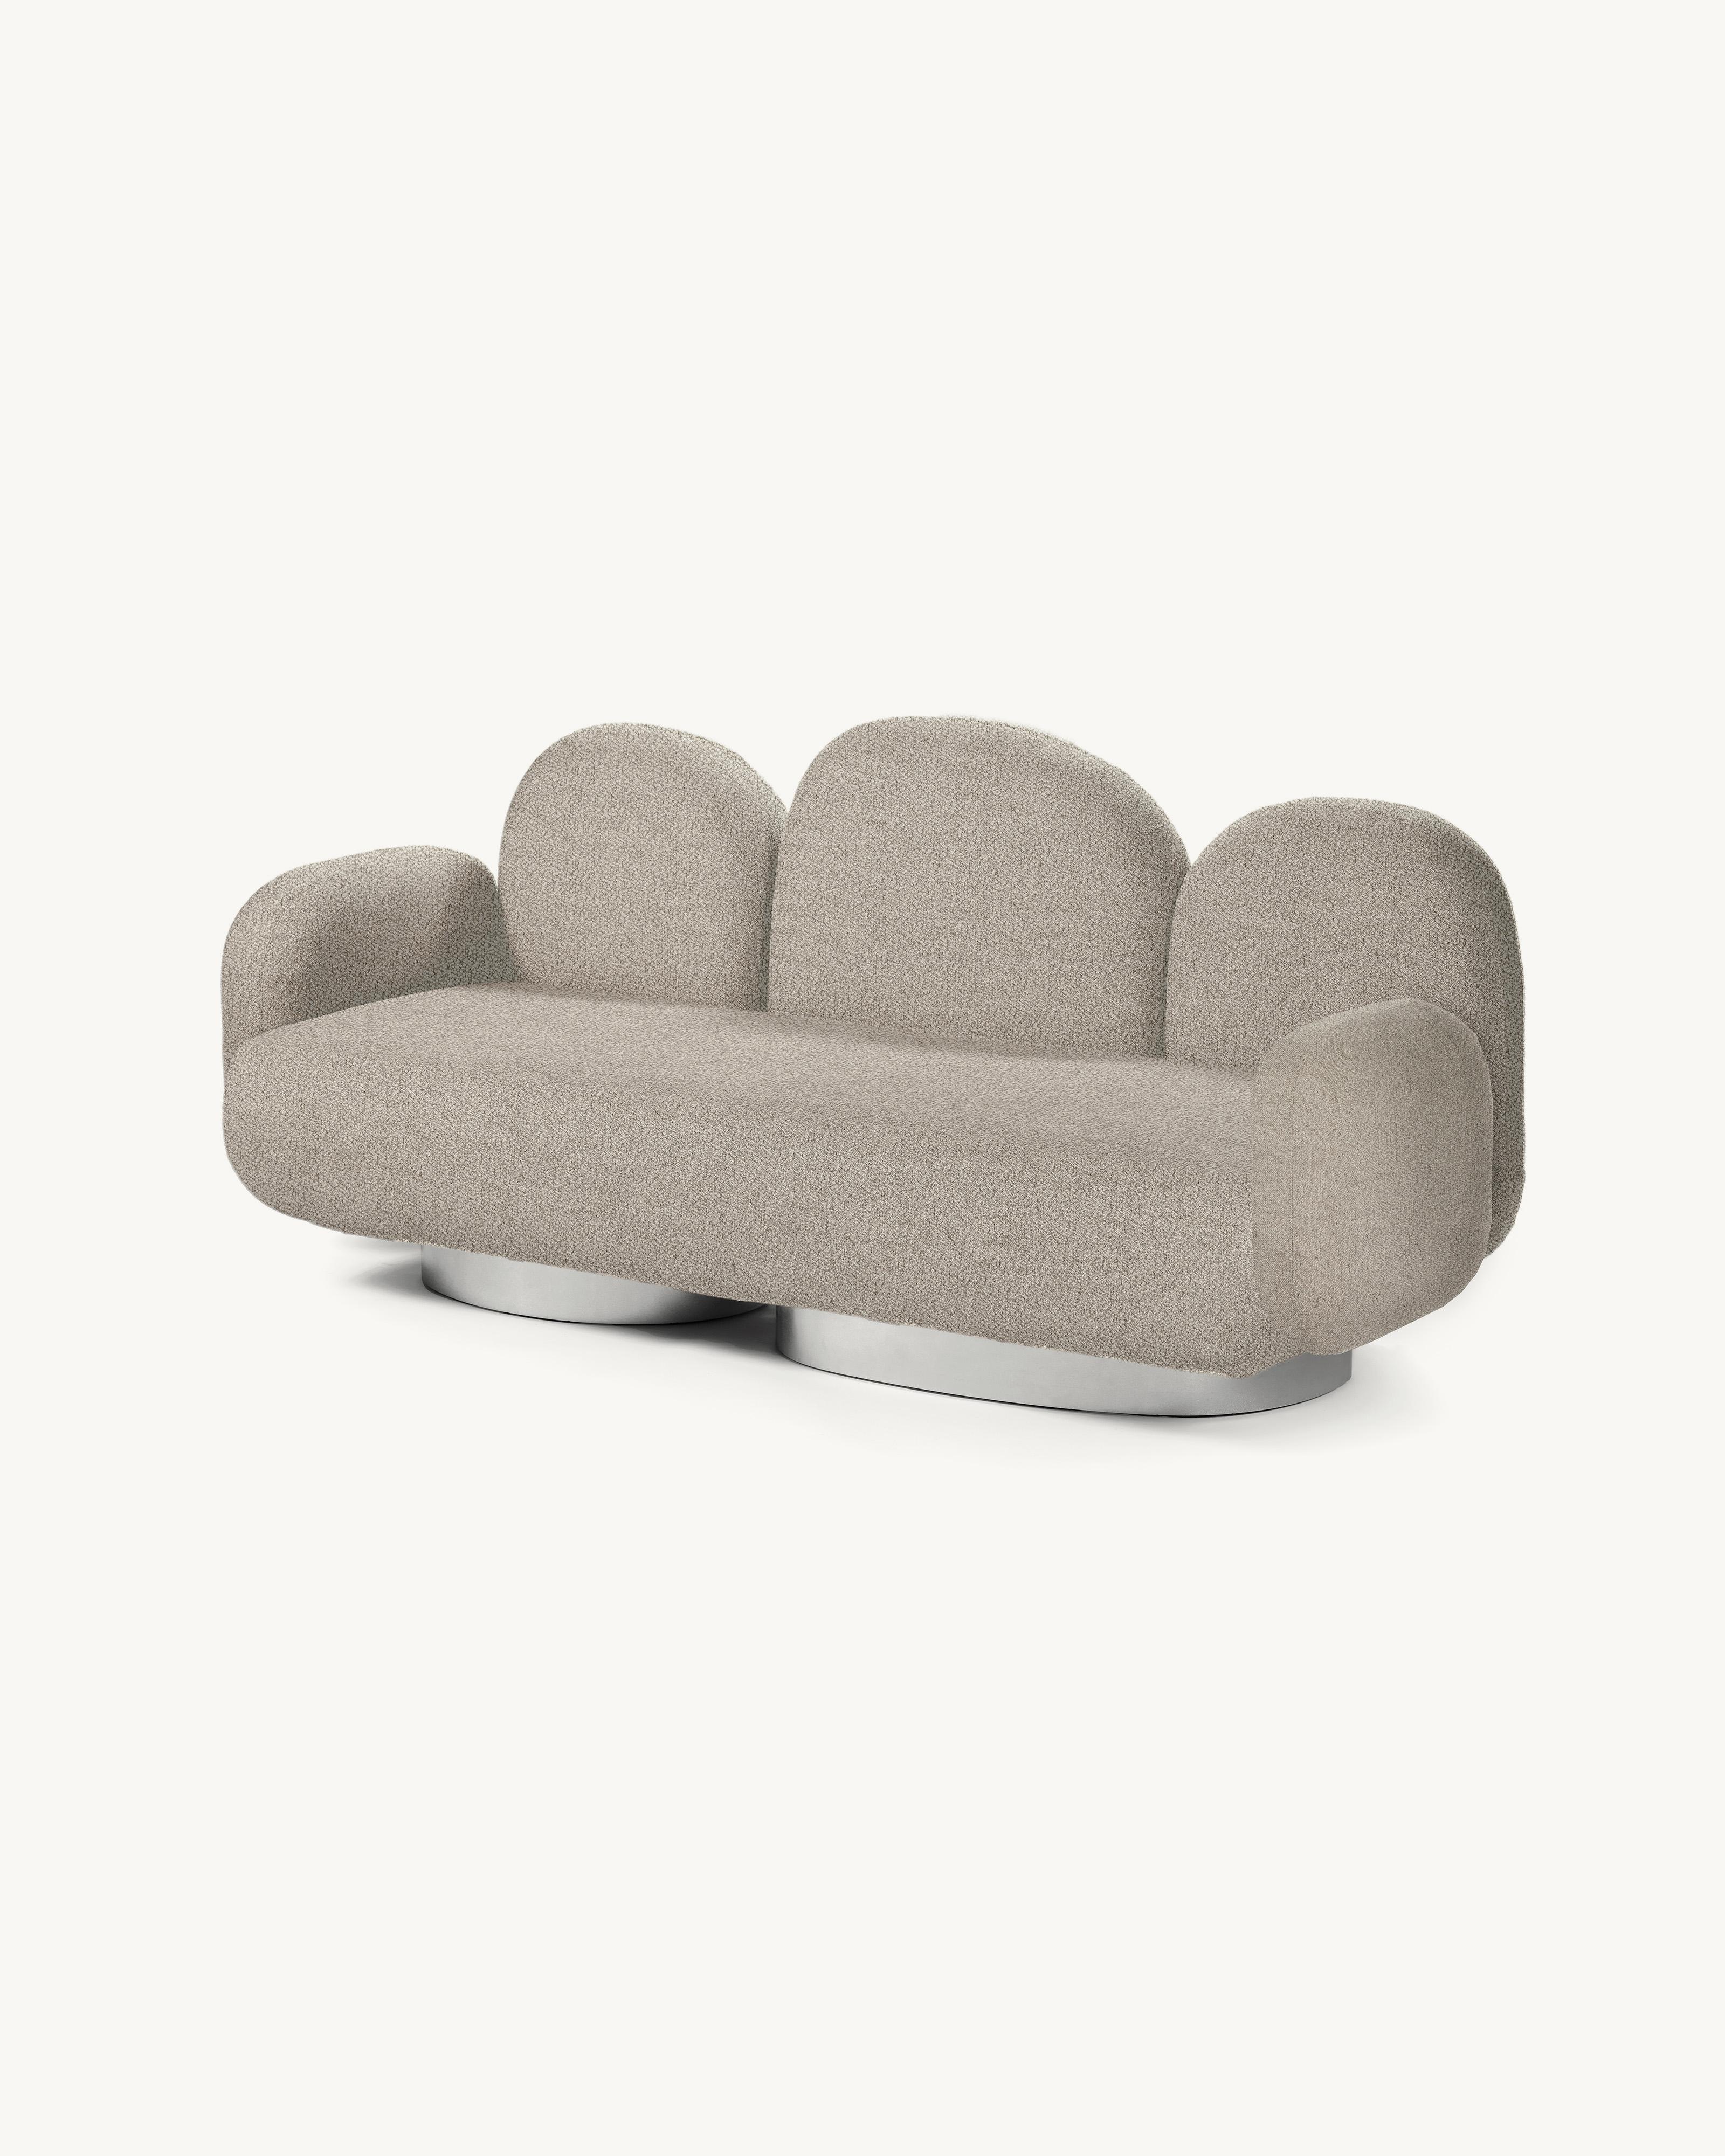 Modular Sofa Assemble 2-Sitzer-Sofa mit 2 Armlehnen 
Entworfen von Destroyers/Builders x Valery Objects
Polsterung: Bangar Sand (V9020342)

Abmessungen: L 87 B 213 H 85CM (SH 40 cm)
MATERIALIEN: Holz, Aluminium und Polstermöbel

Das ASSEMBLE-Sofa